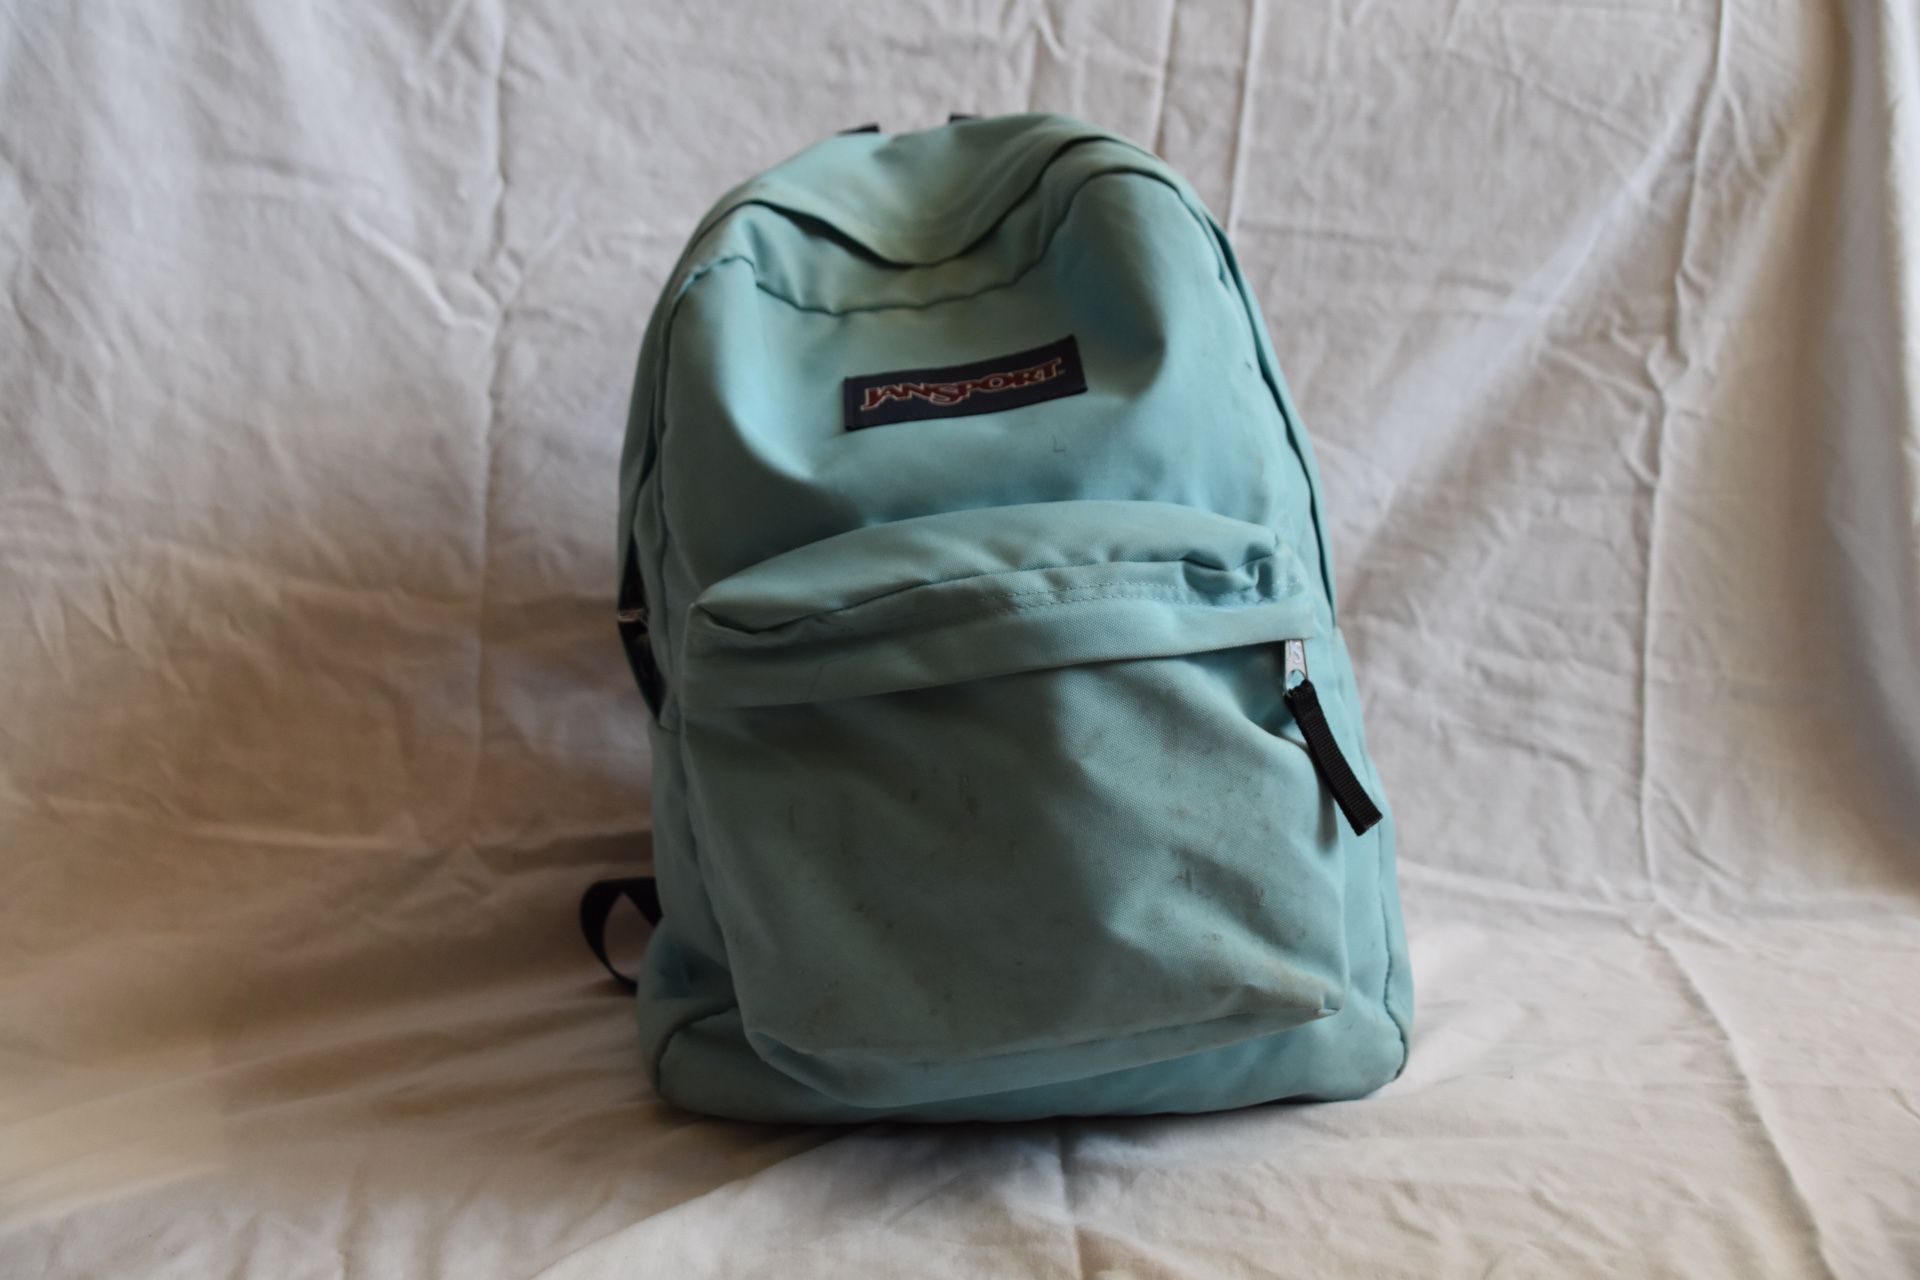 Aqua blue Jansport backpack (superbreak)